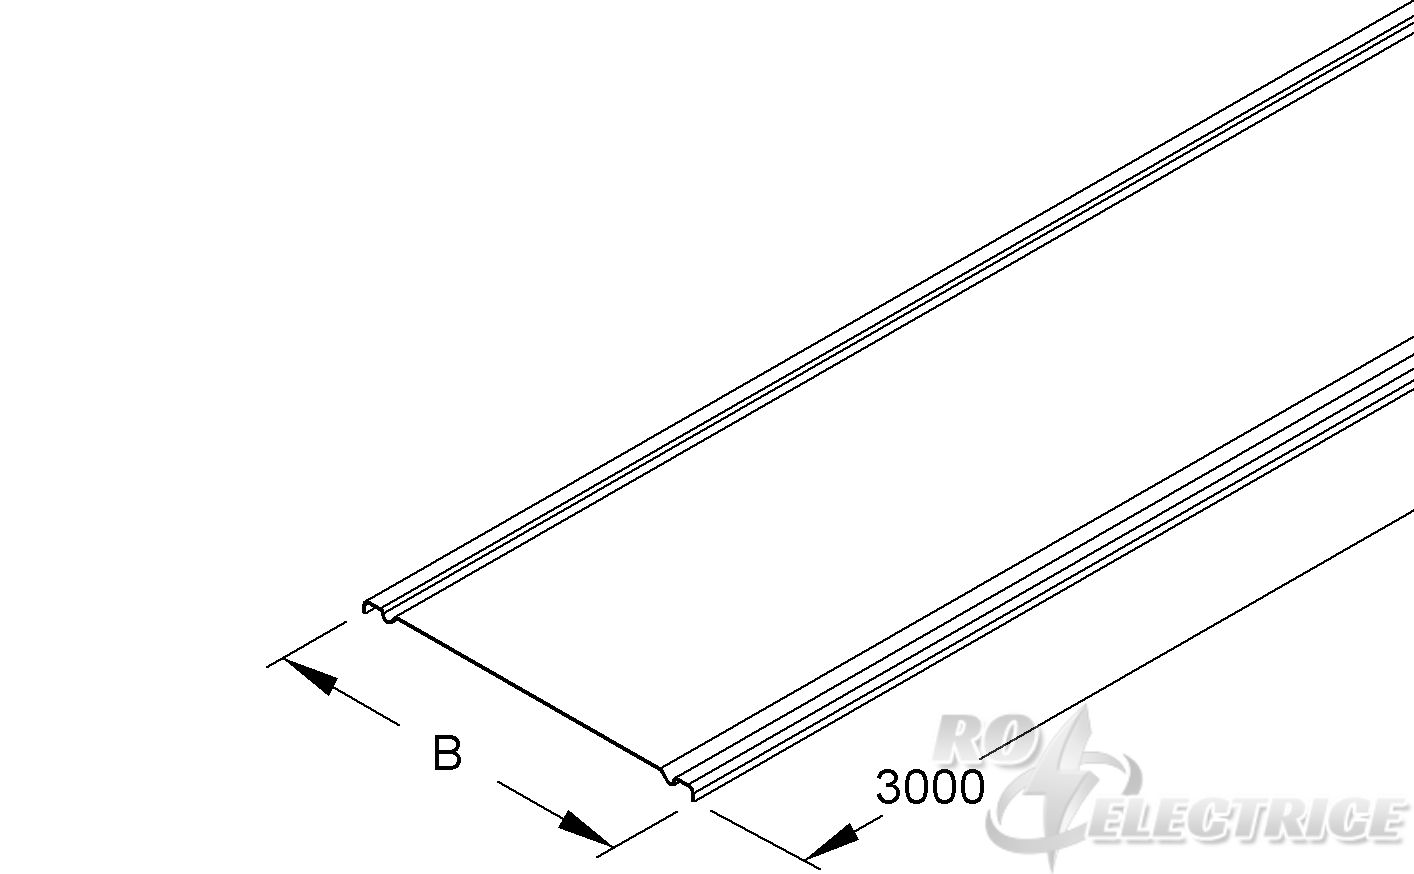 Deckel für Gitterrinne, 300x3000 mm, Stahl, bandverzinkt DIN EN 10346